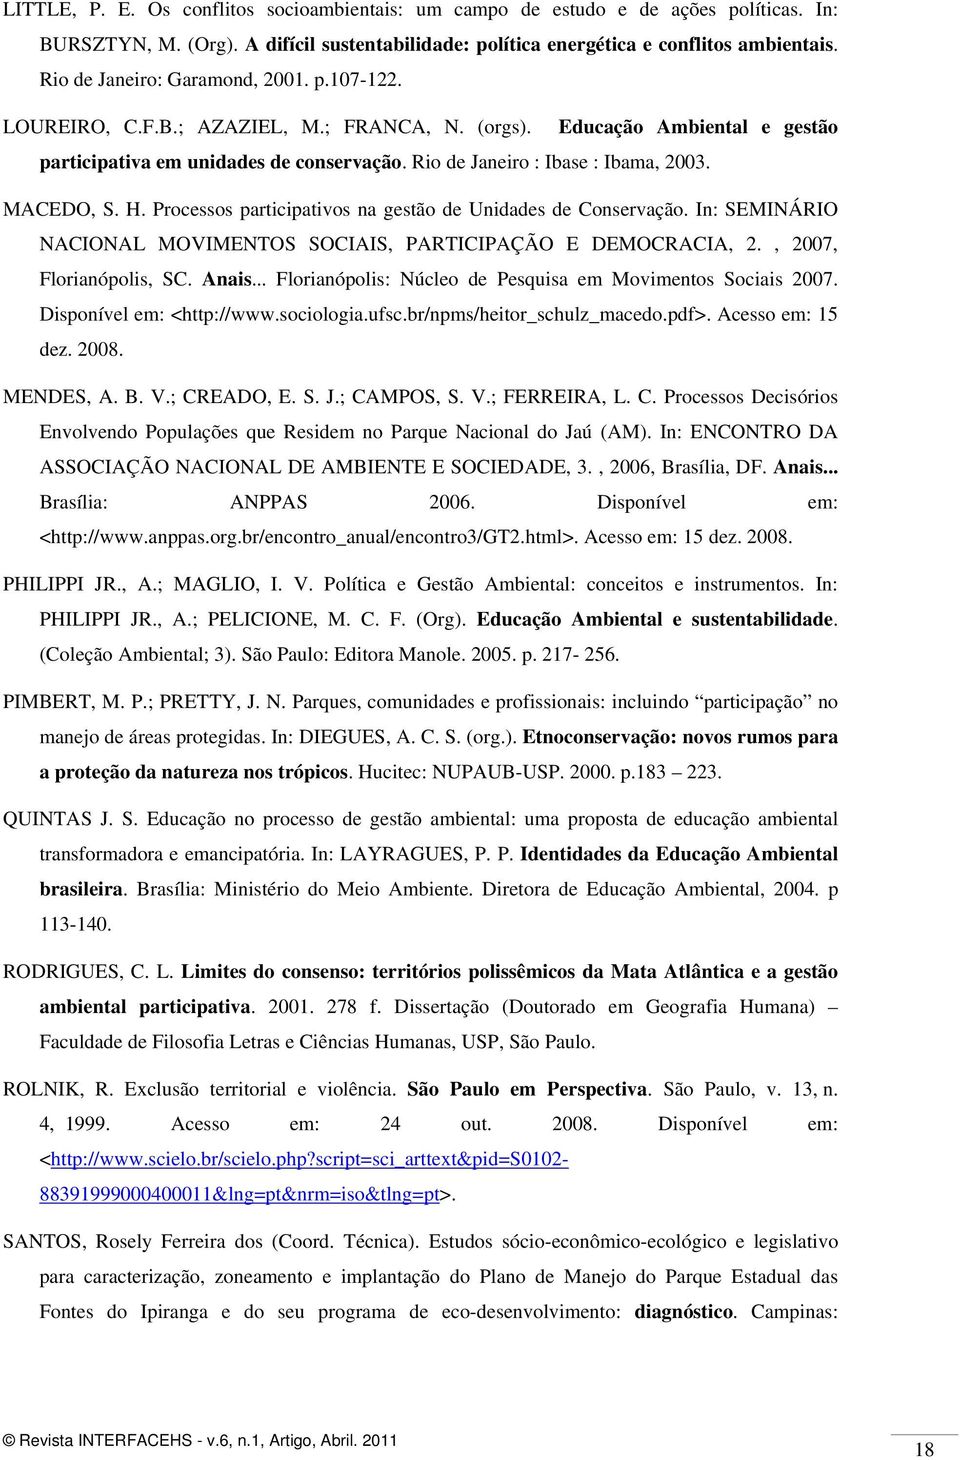 MACEDO, S. H. Processos participativos na gestão de Unidades de Conservação. In: SEMINÁRIO NACIONAL MOVIMENTOS SOCIAIS, PARTICIPAÇÃO E DEMOCRACIA, 2., 2007, Florianópolis, SC. Anais.